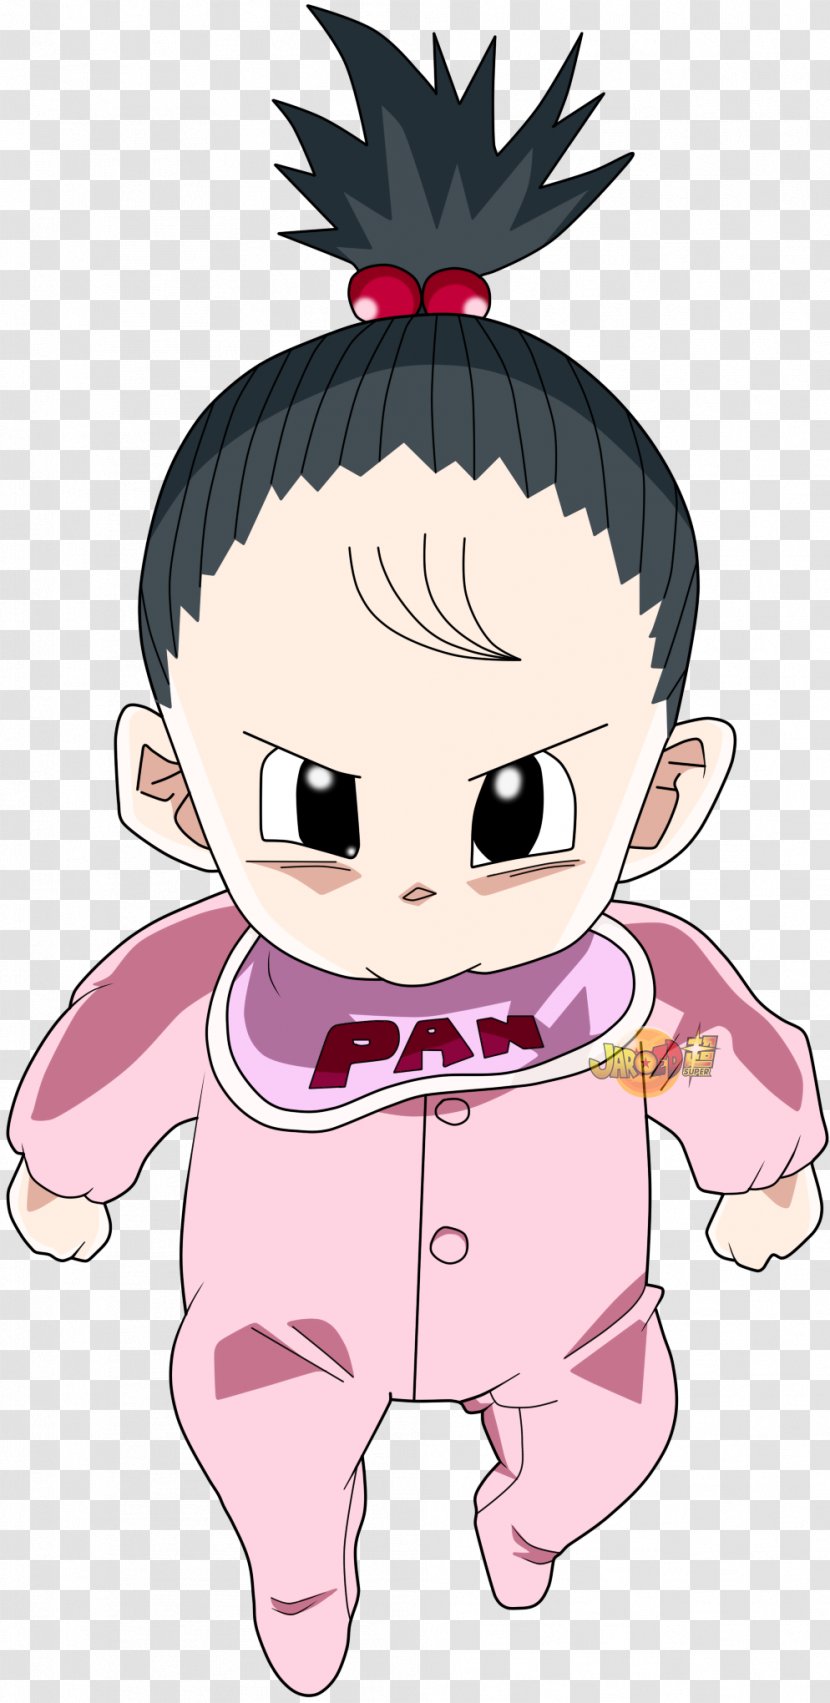 Pan Goku Videl Gohan Trunks - Heart - Pans Transparent PNG